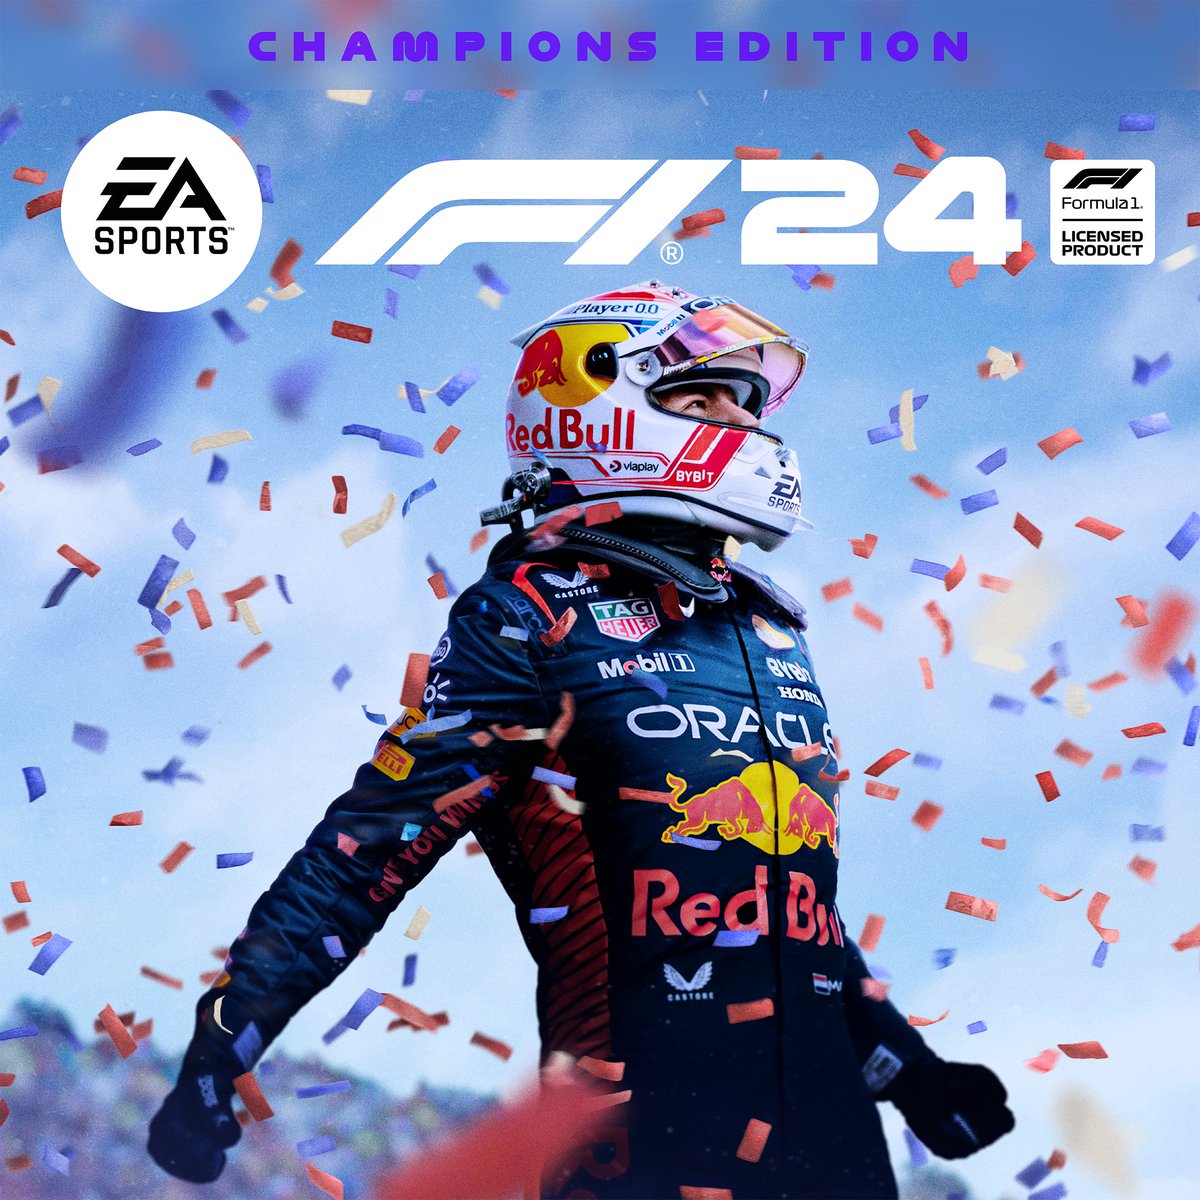 🔥 ¡Max Verstappen, protagonista absoluto de la edición especial del nuevo F1 24! 👉 El videojuego saldrá a la venta el próximo 31 de mayo.